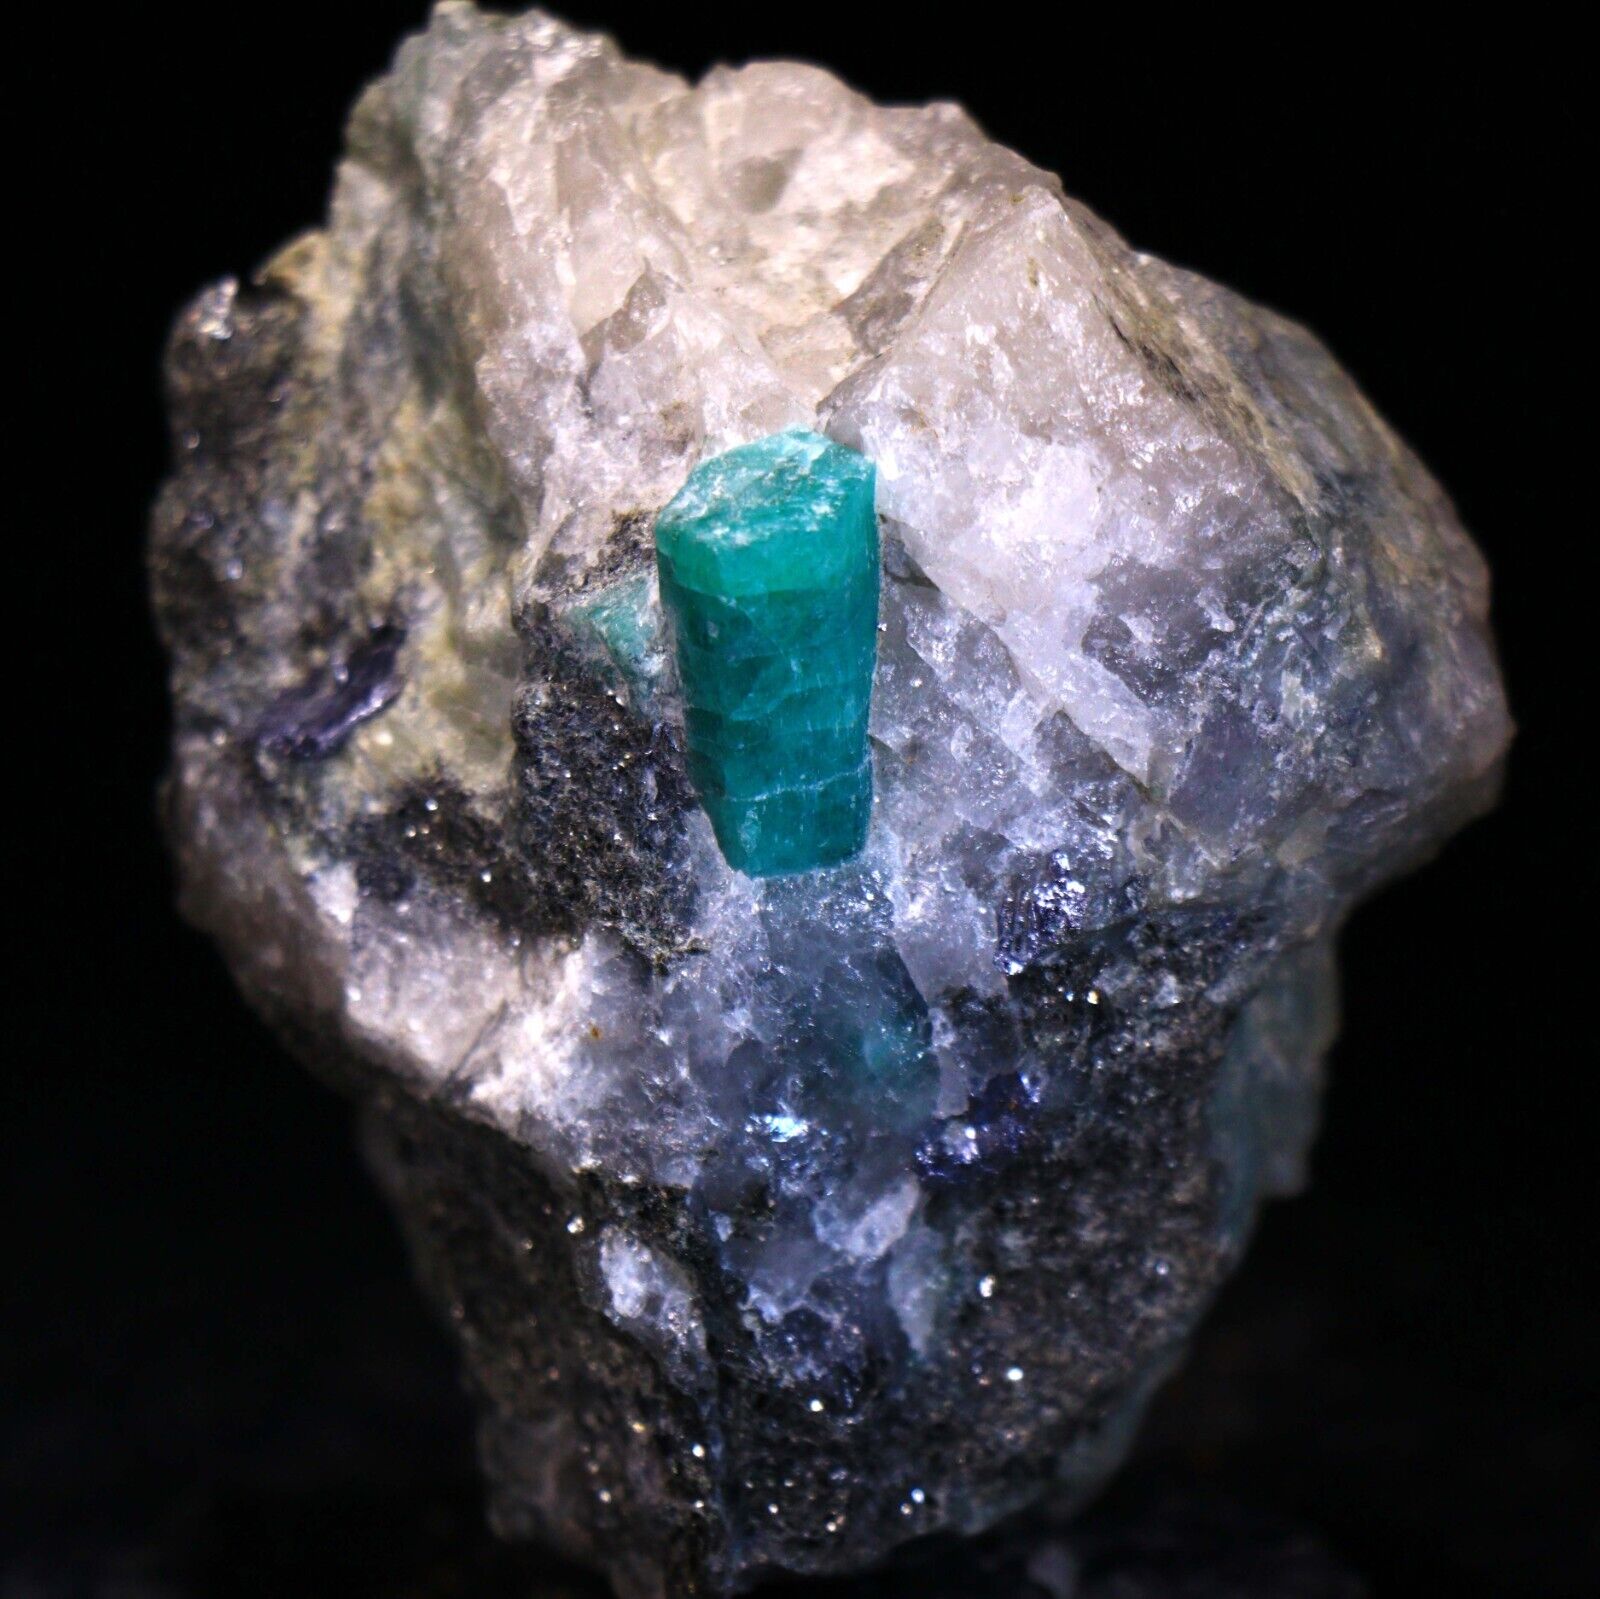 2.6 inch Deep Green Emerald Crystals on Matrix, Minas Gerais, Brazil EM218